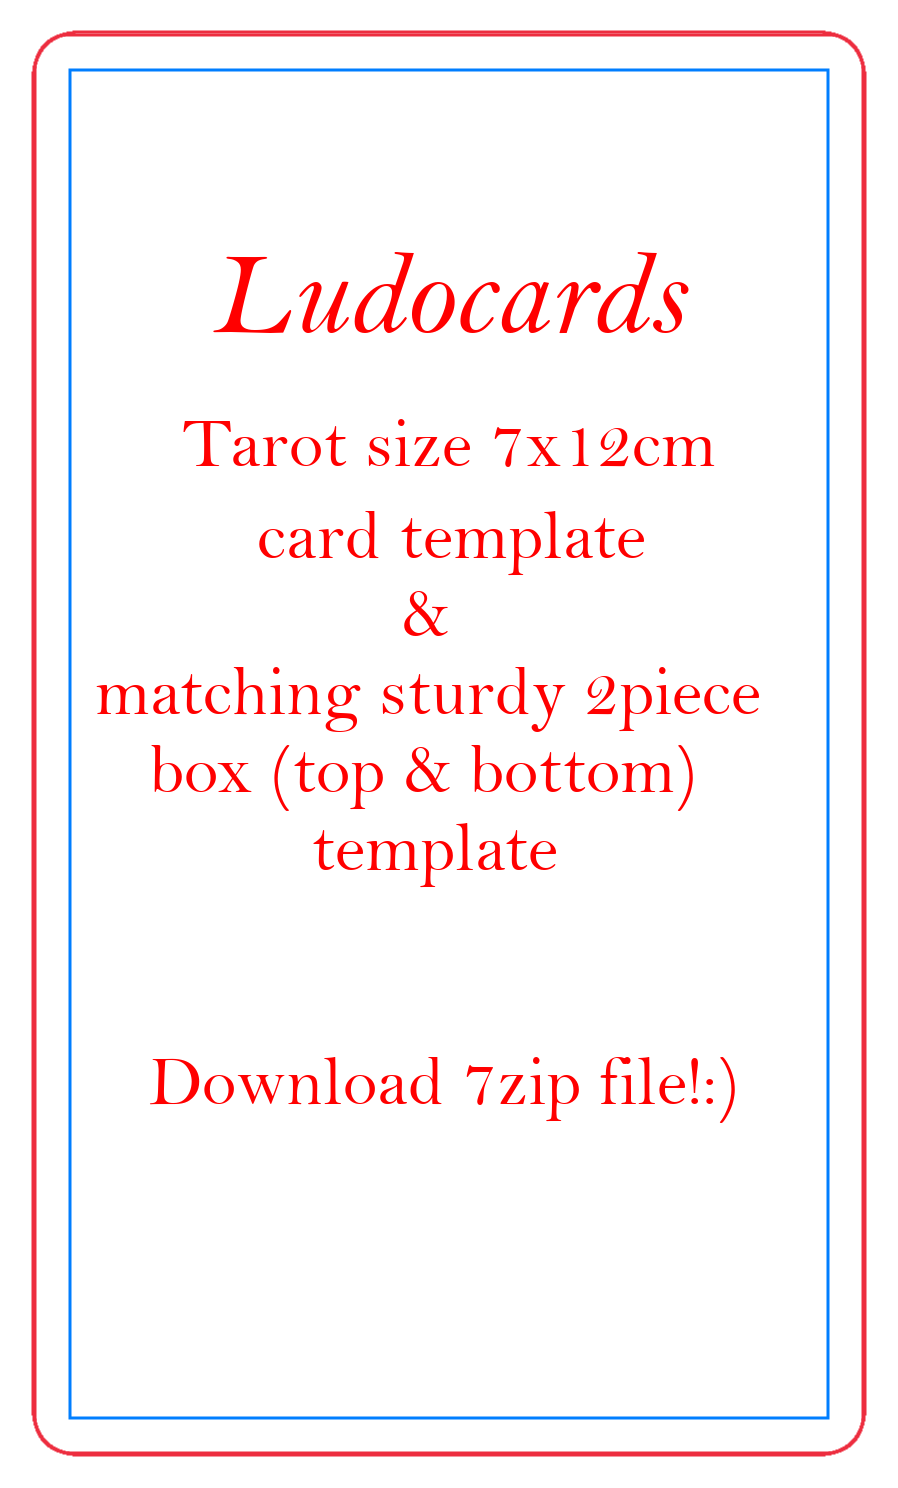 ludocards Tarot size 7x12cm card and sturdy 2piece